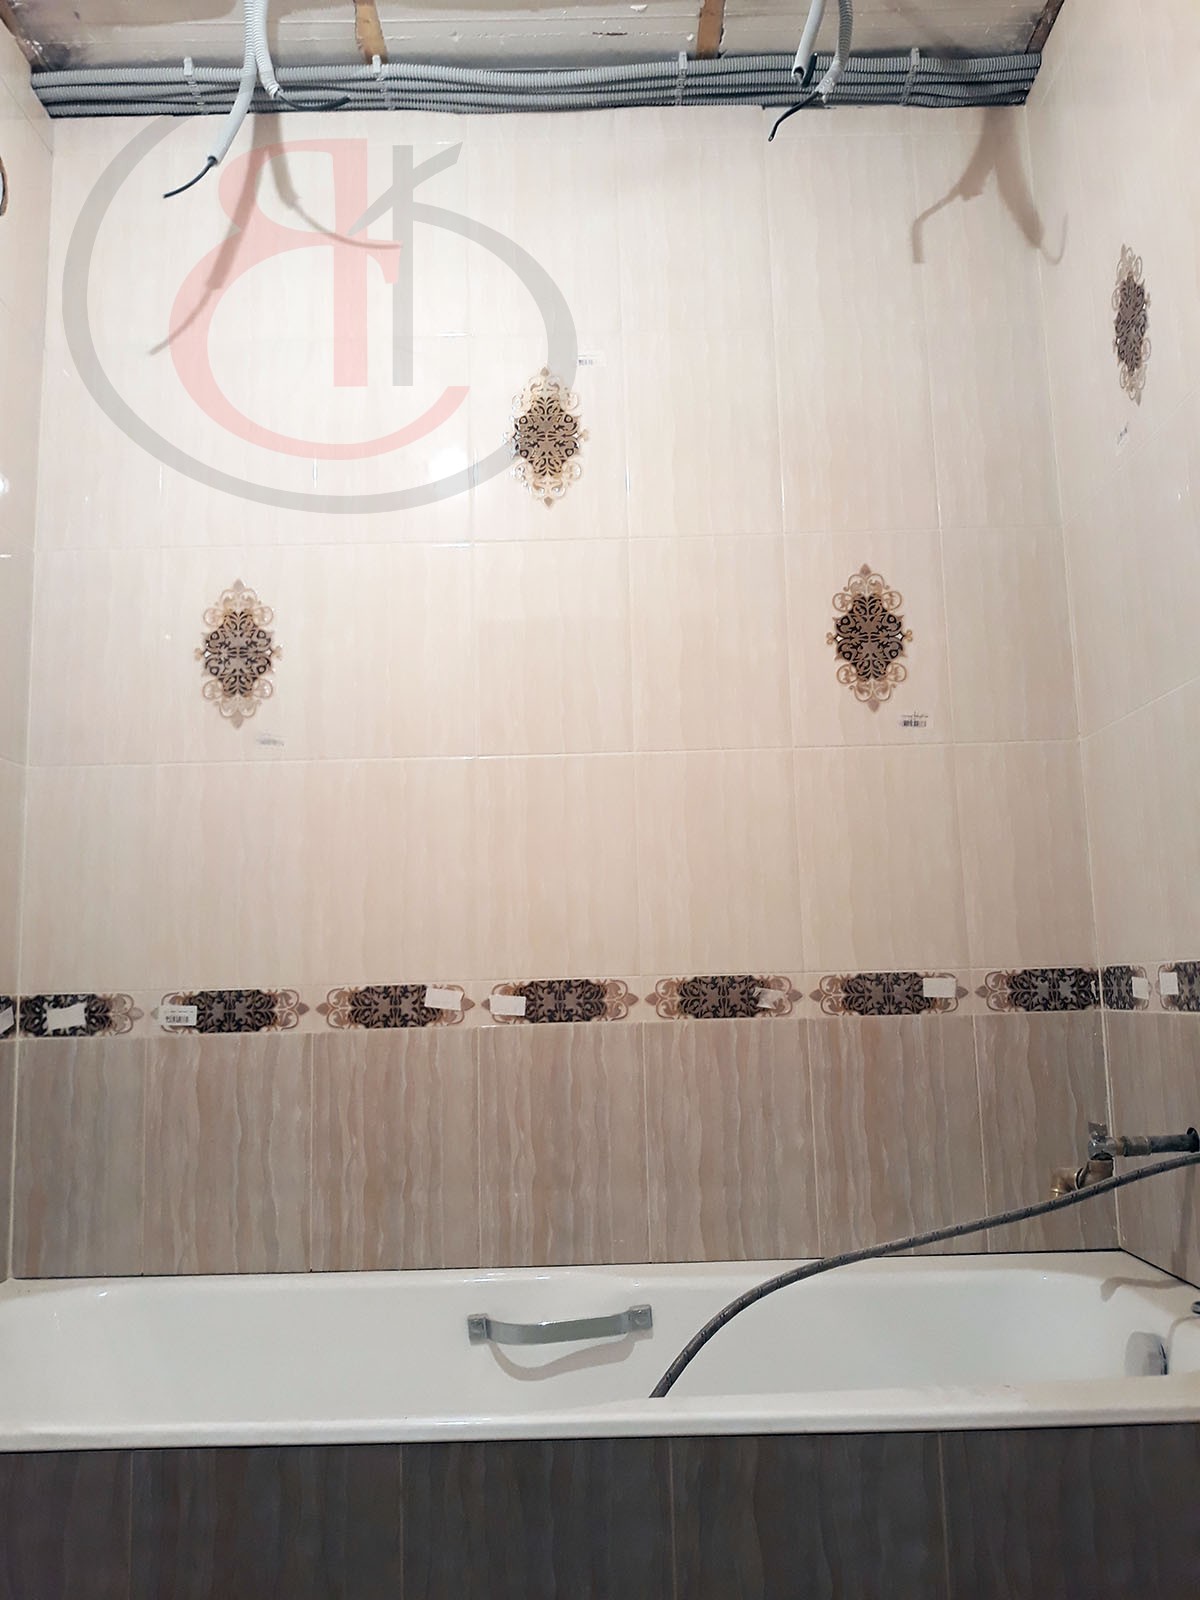 Достоинства качества в отделке ванной и туалета по ул. Беловежская, В ПРОЦЕССЕ РЕМОНТА (20)